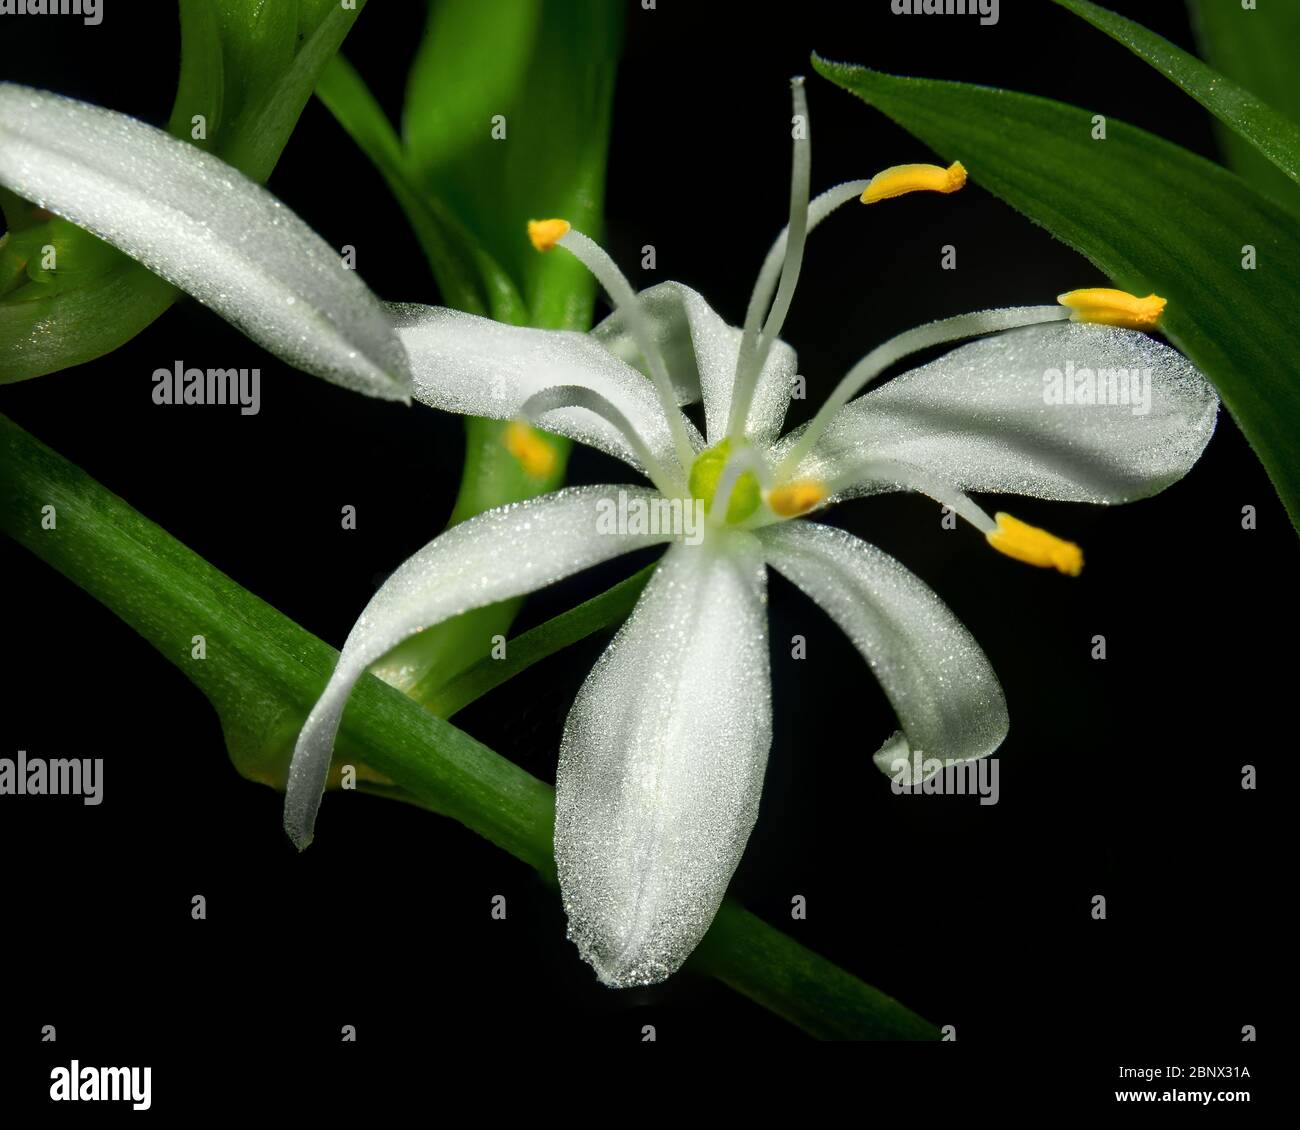 Une fleur de chlorophytum comosum blanche dans une inflorescence ramifiée. Chaque fleur a six tepals à trois veinés. Tout sur fond noir Banque D'Images